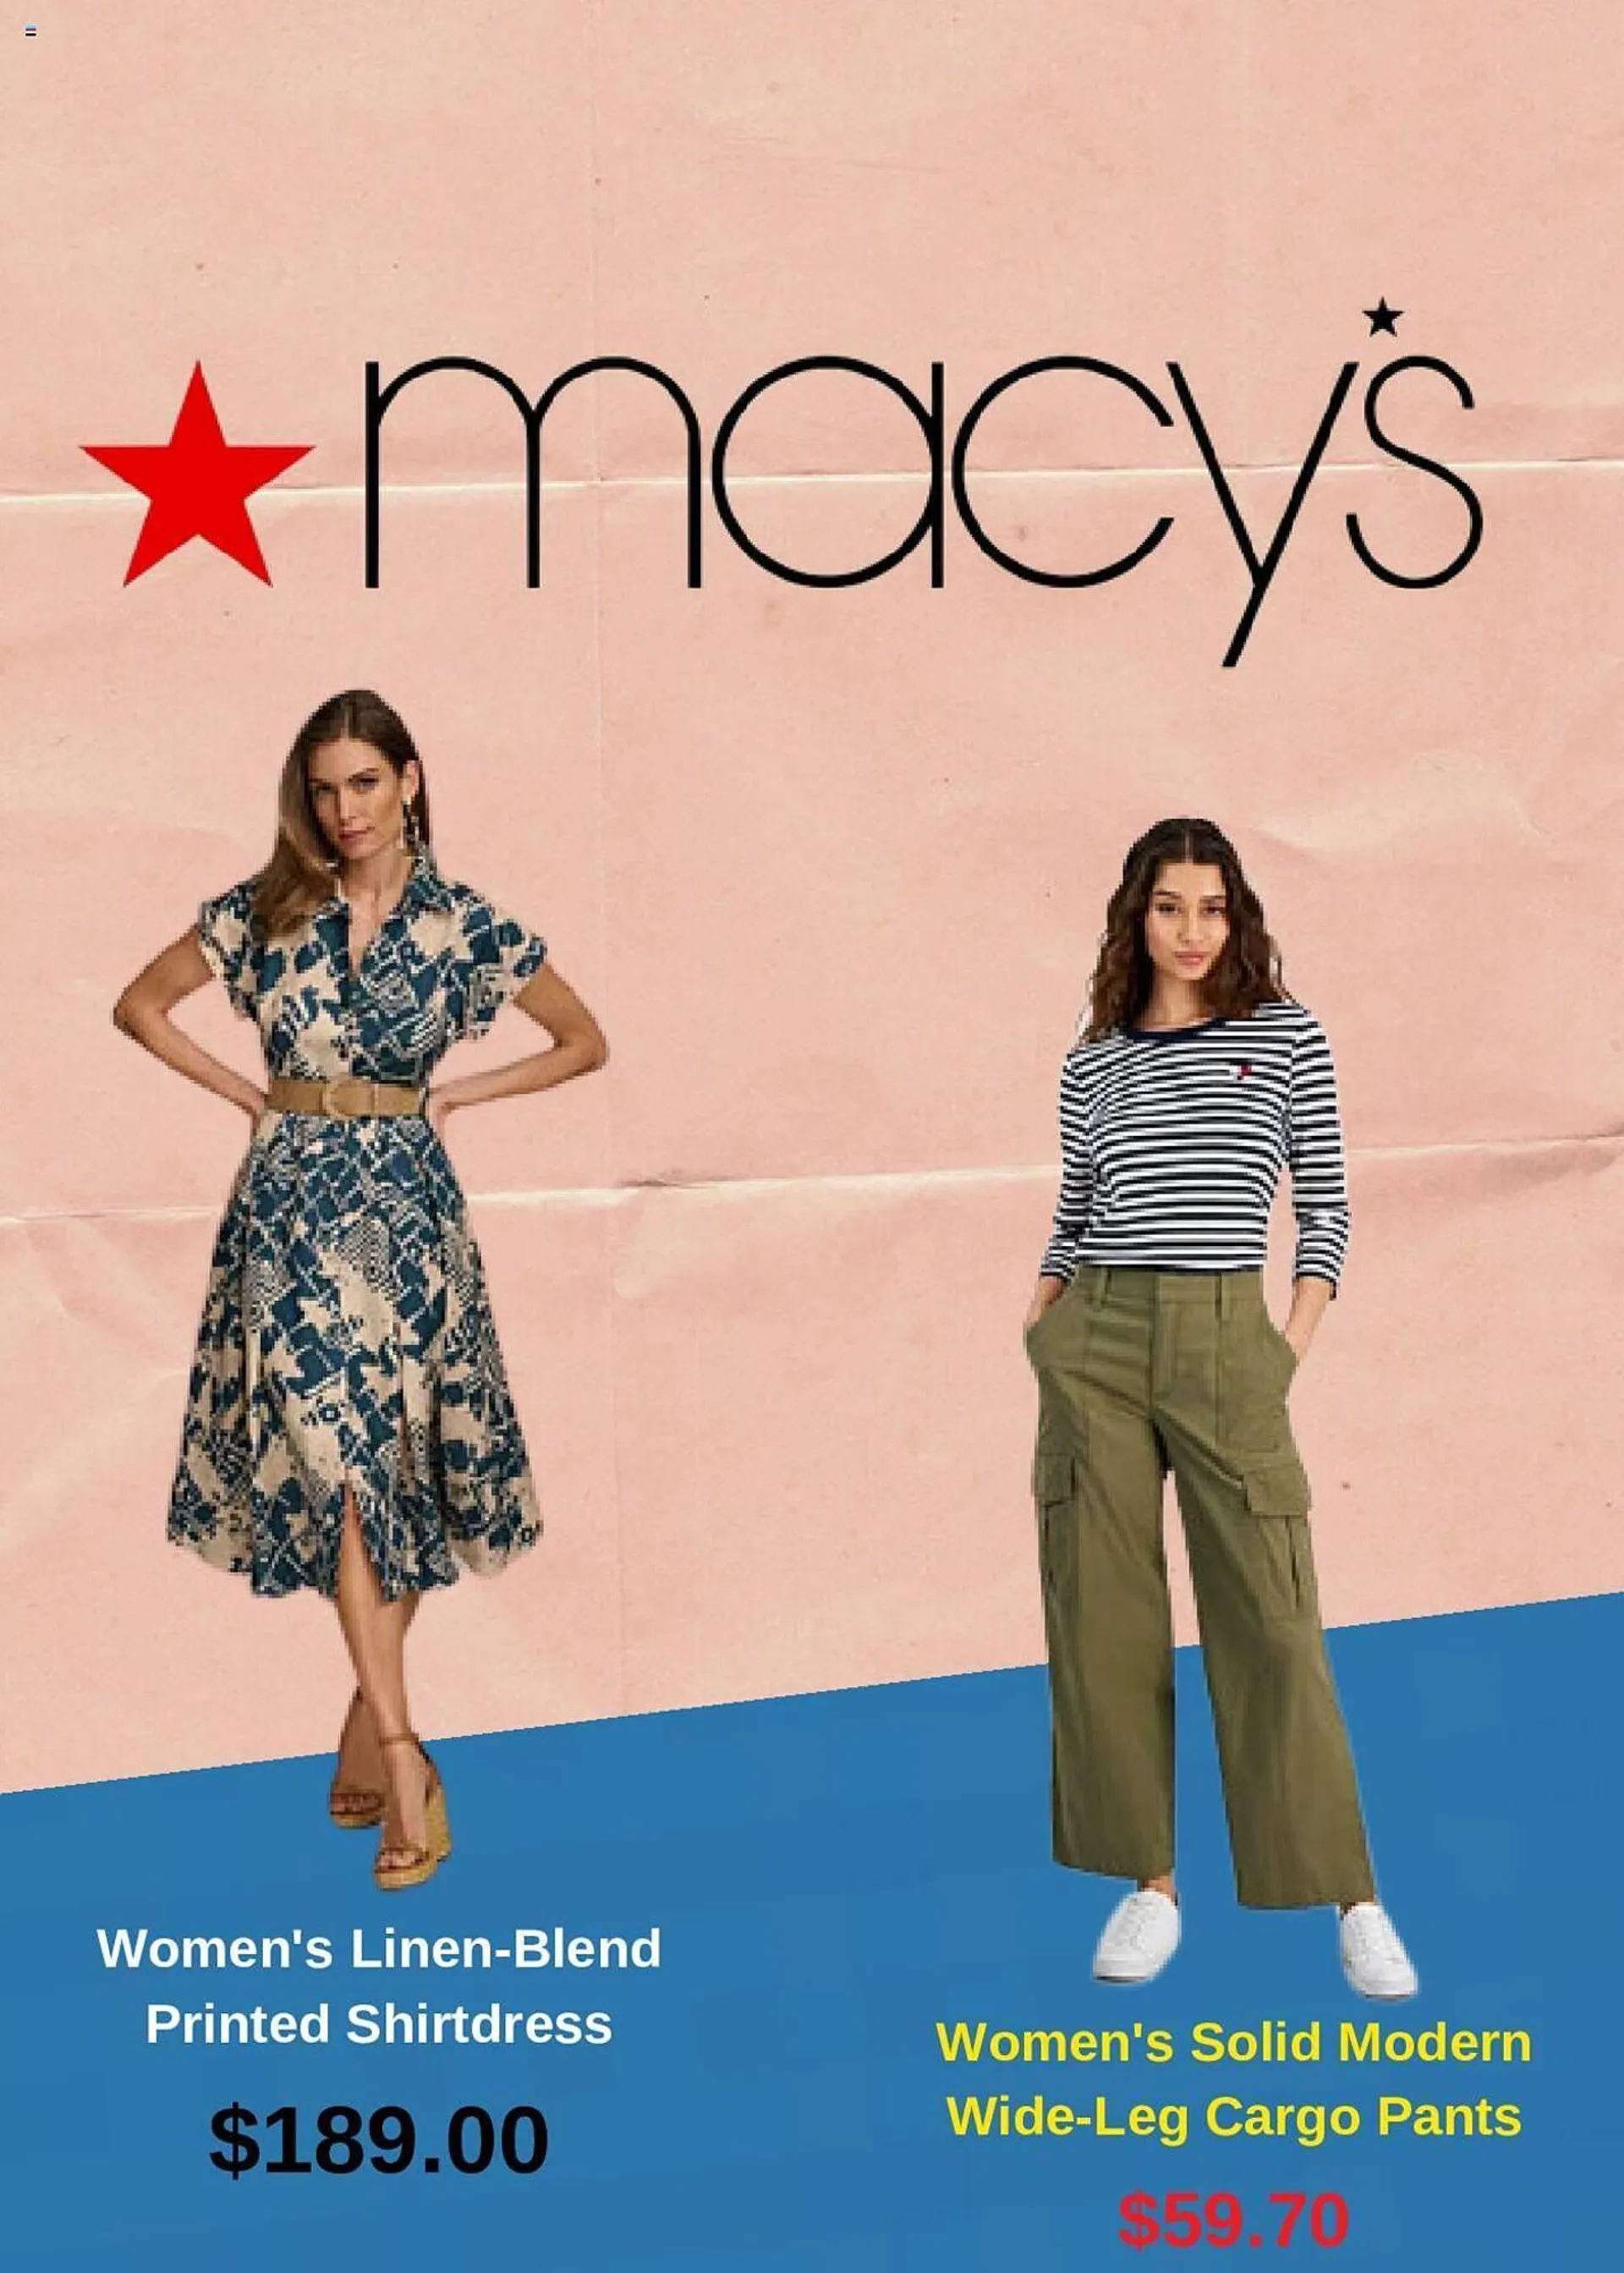 Macys Weekly Ad - 1